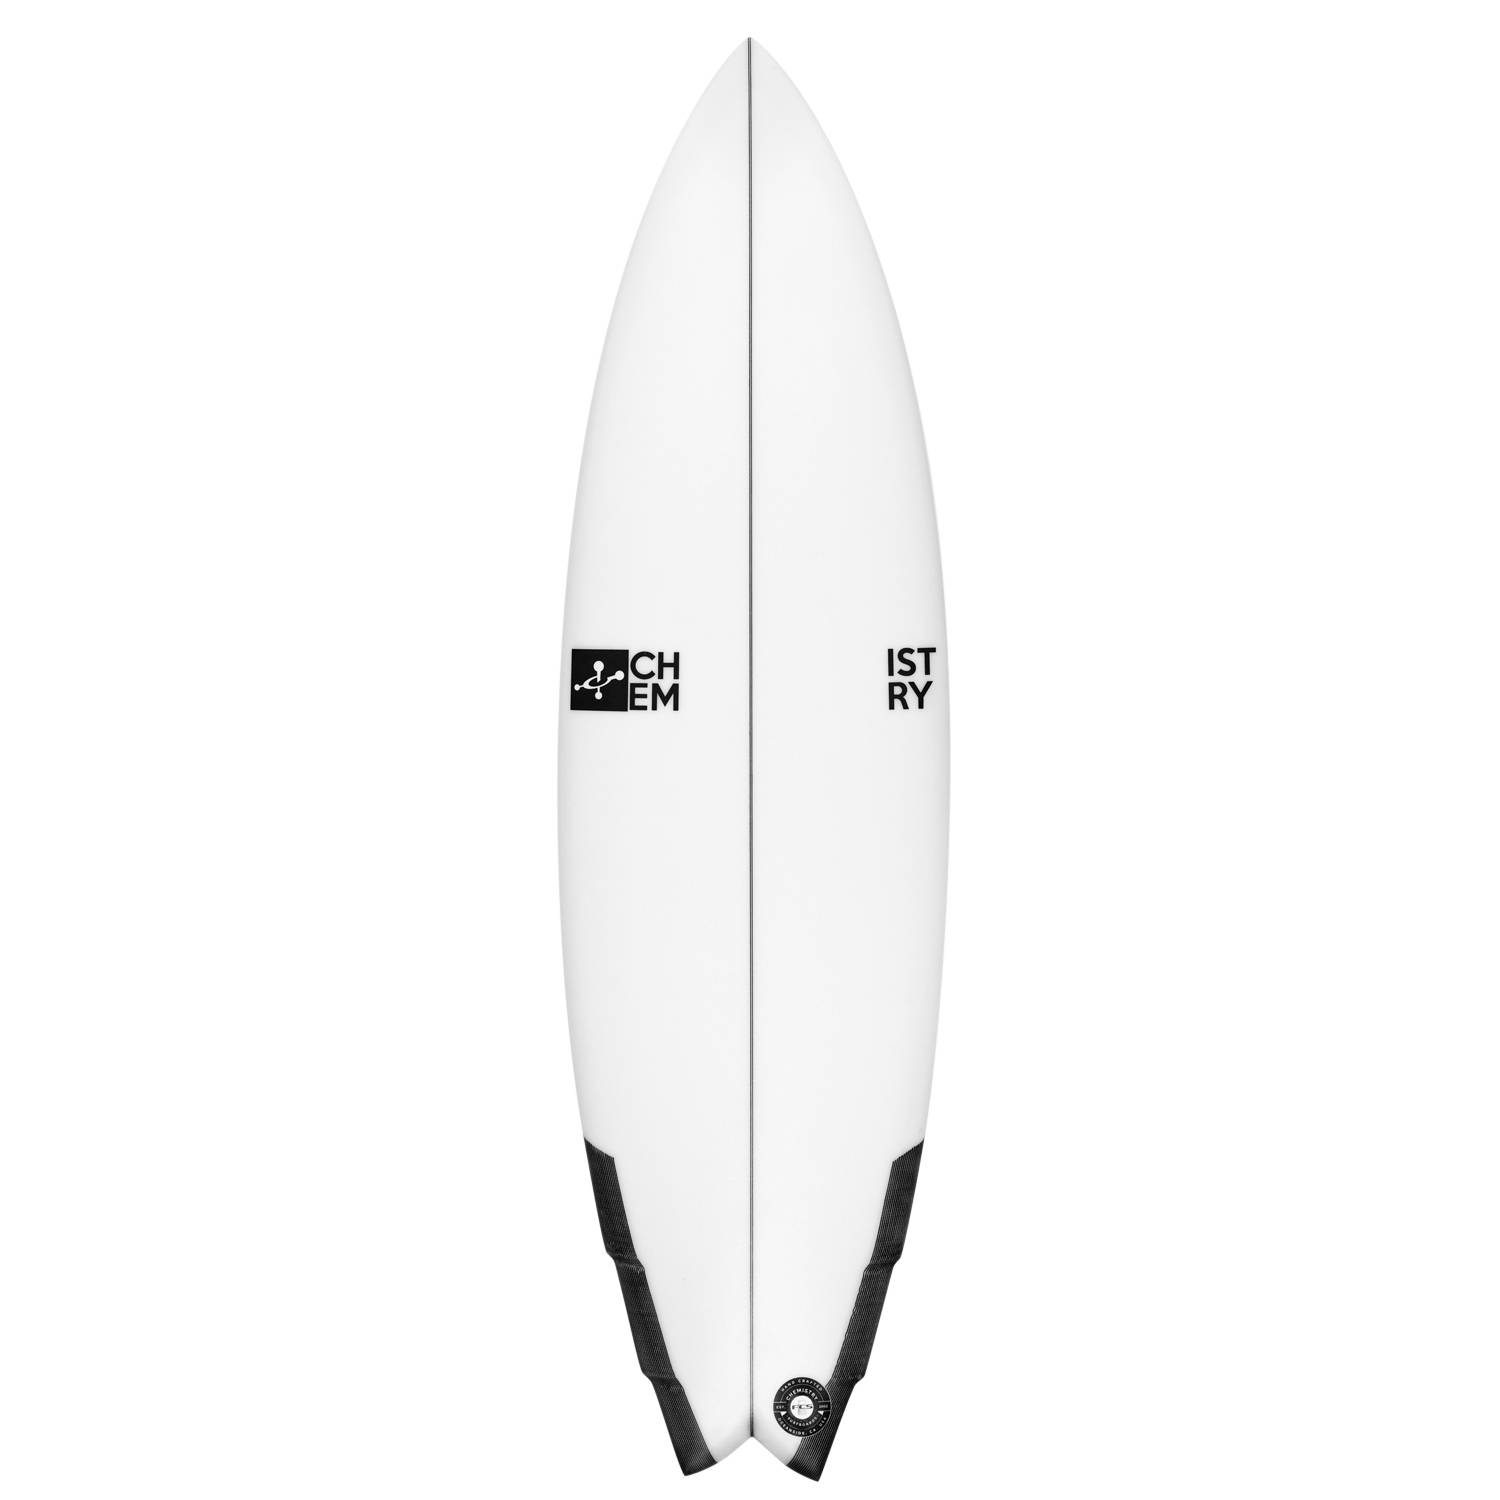 美品 5'7 ケミストリーサーフボード chemistrysurfboard